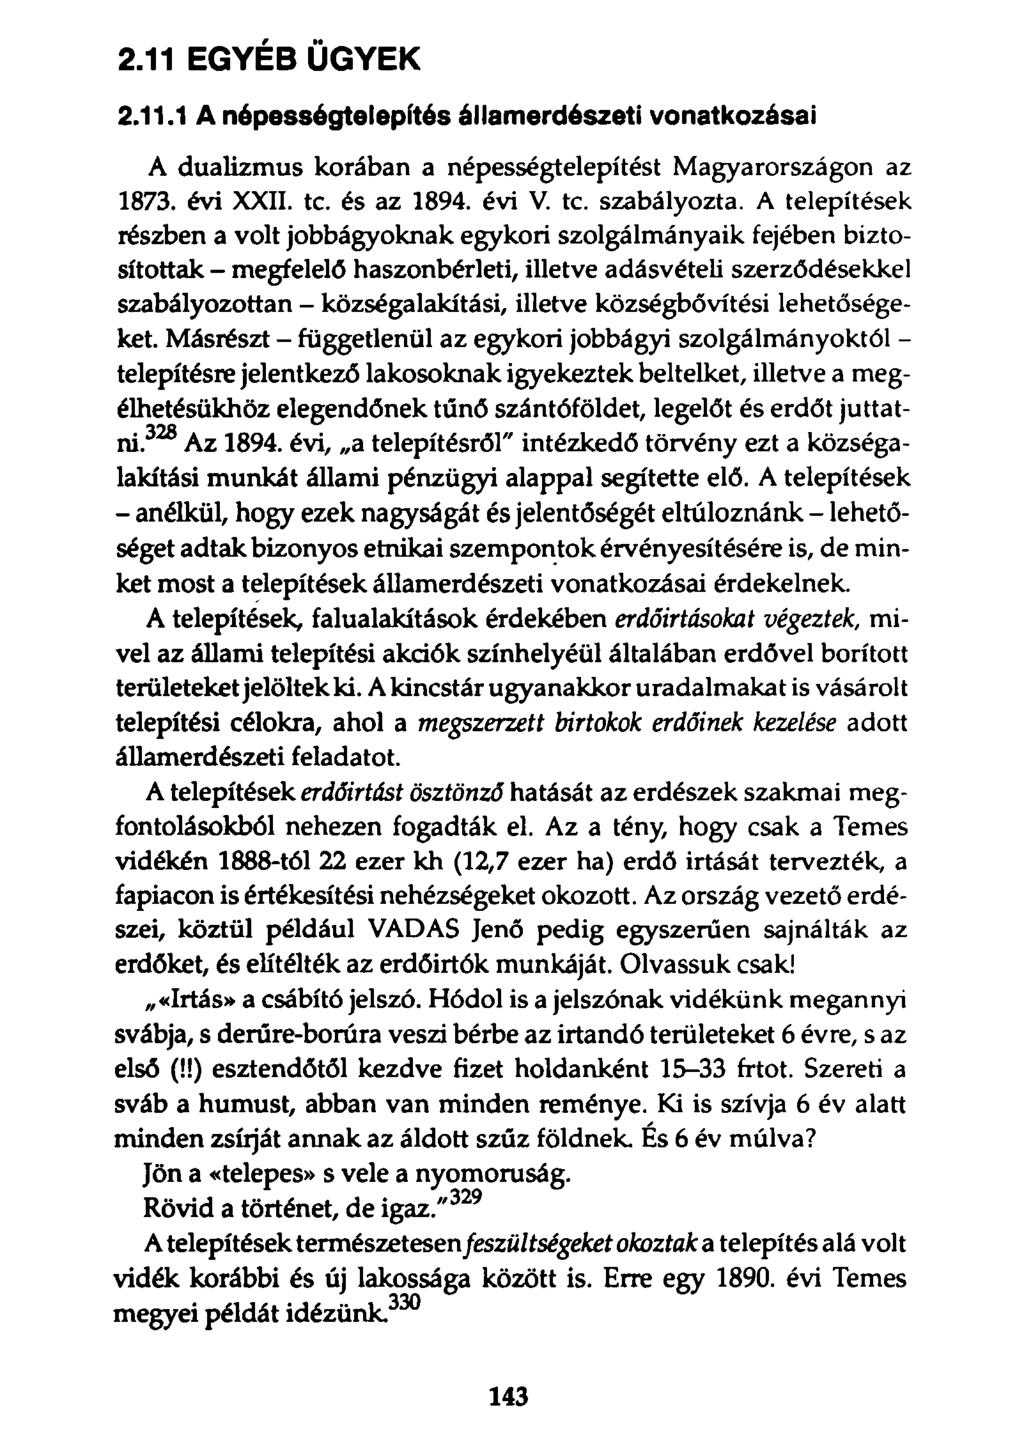 2.11 EGYÉB ÜGYEK 2.11.1 A népességtelepítés államerdészeti vonatkozásai A dualizmus korában a népességtelepítést Magyarországon az 1873. évi XXII. te. és az 1894. évi V. te. szabályozta.